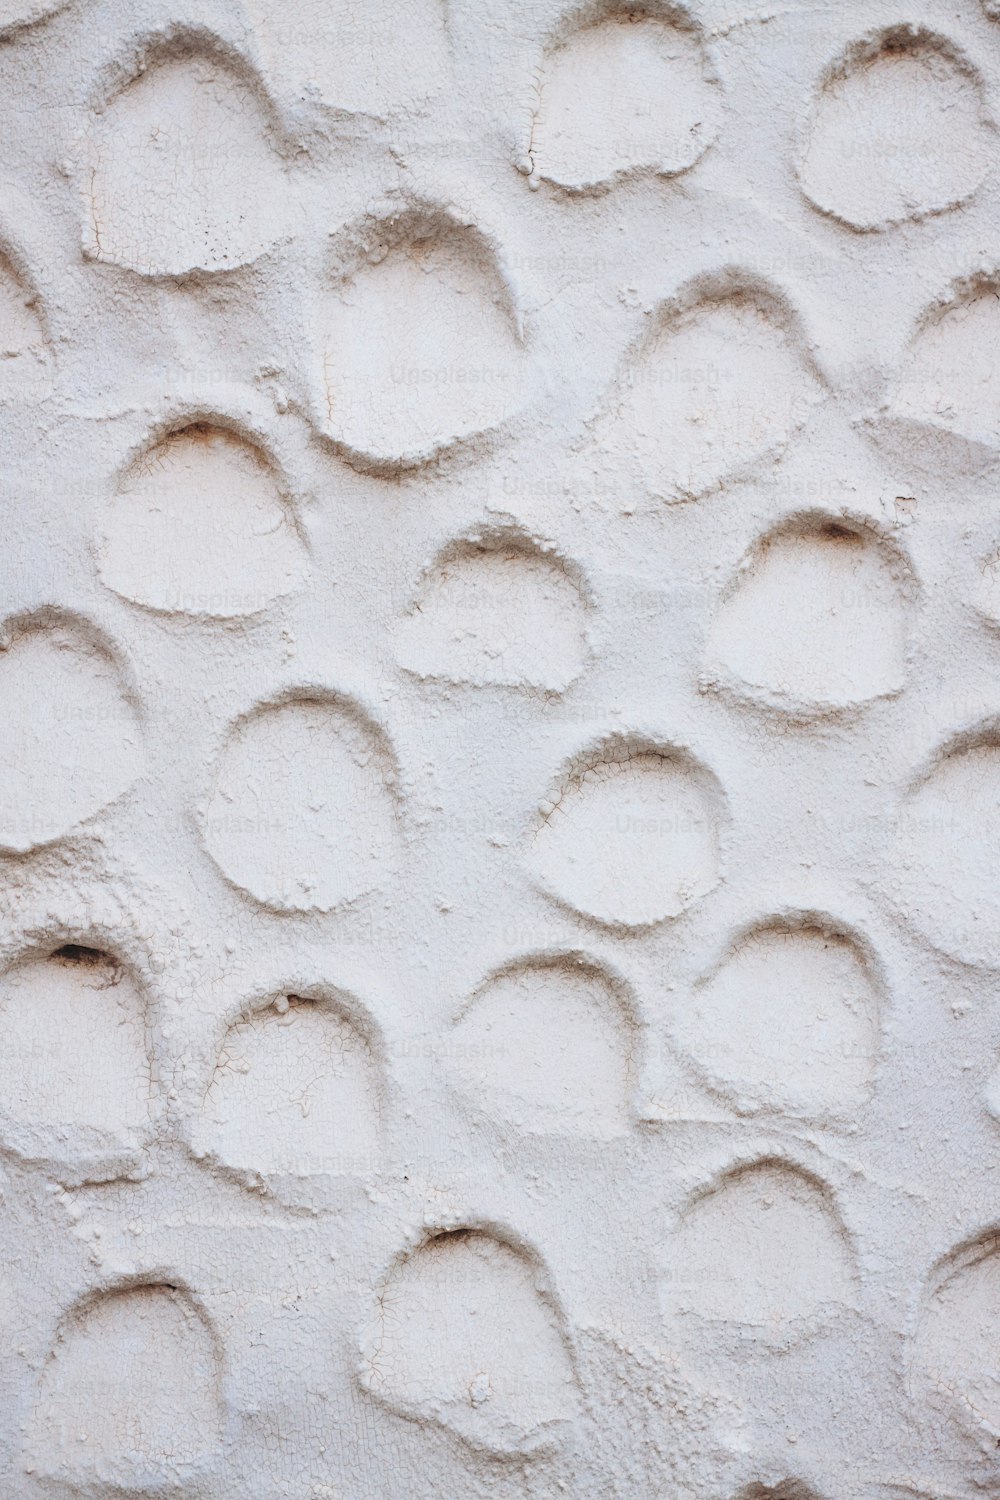 um close up de uma parede com círculos sobre ela